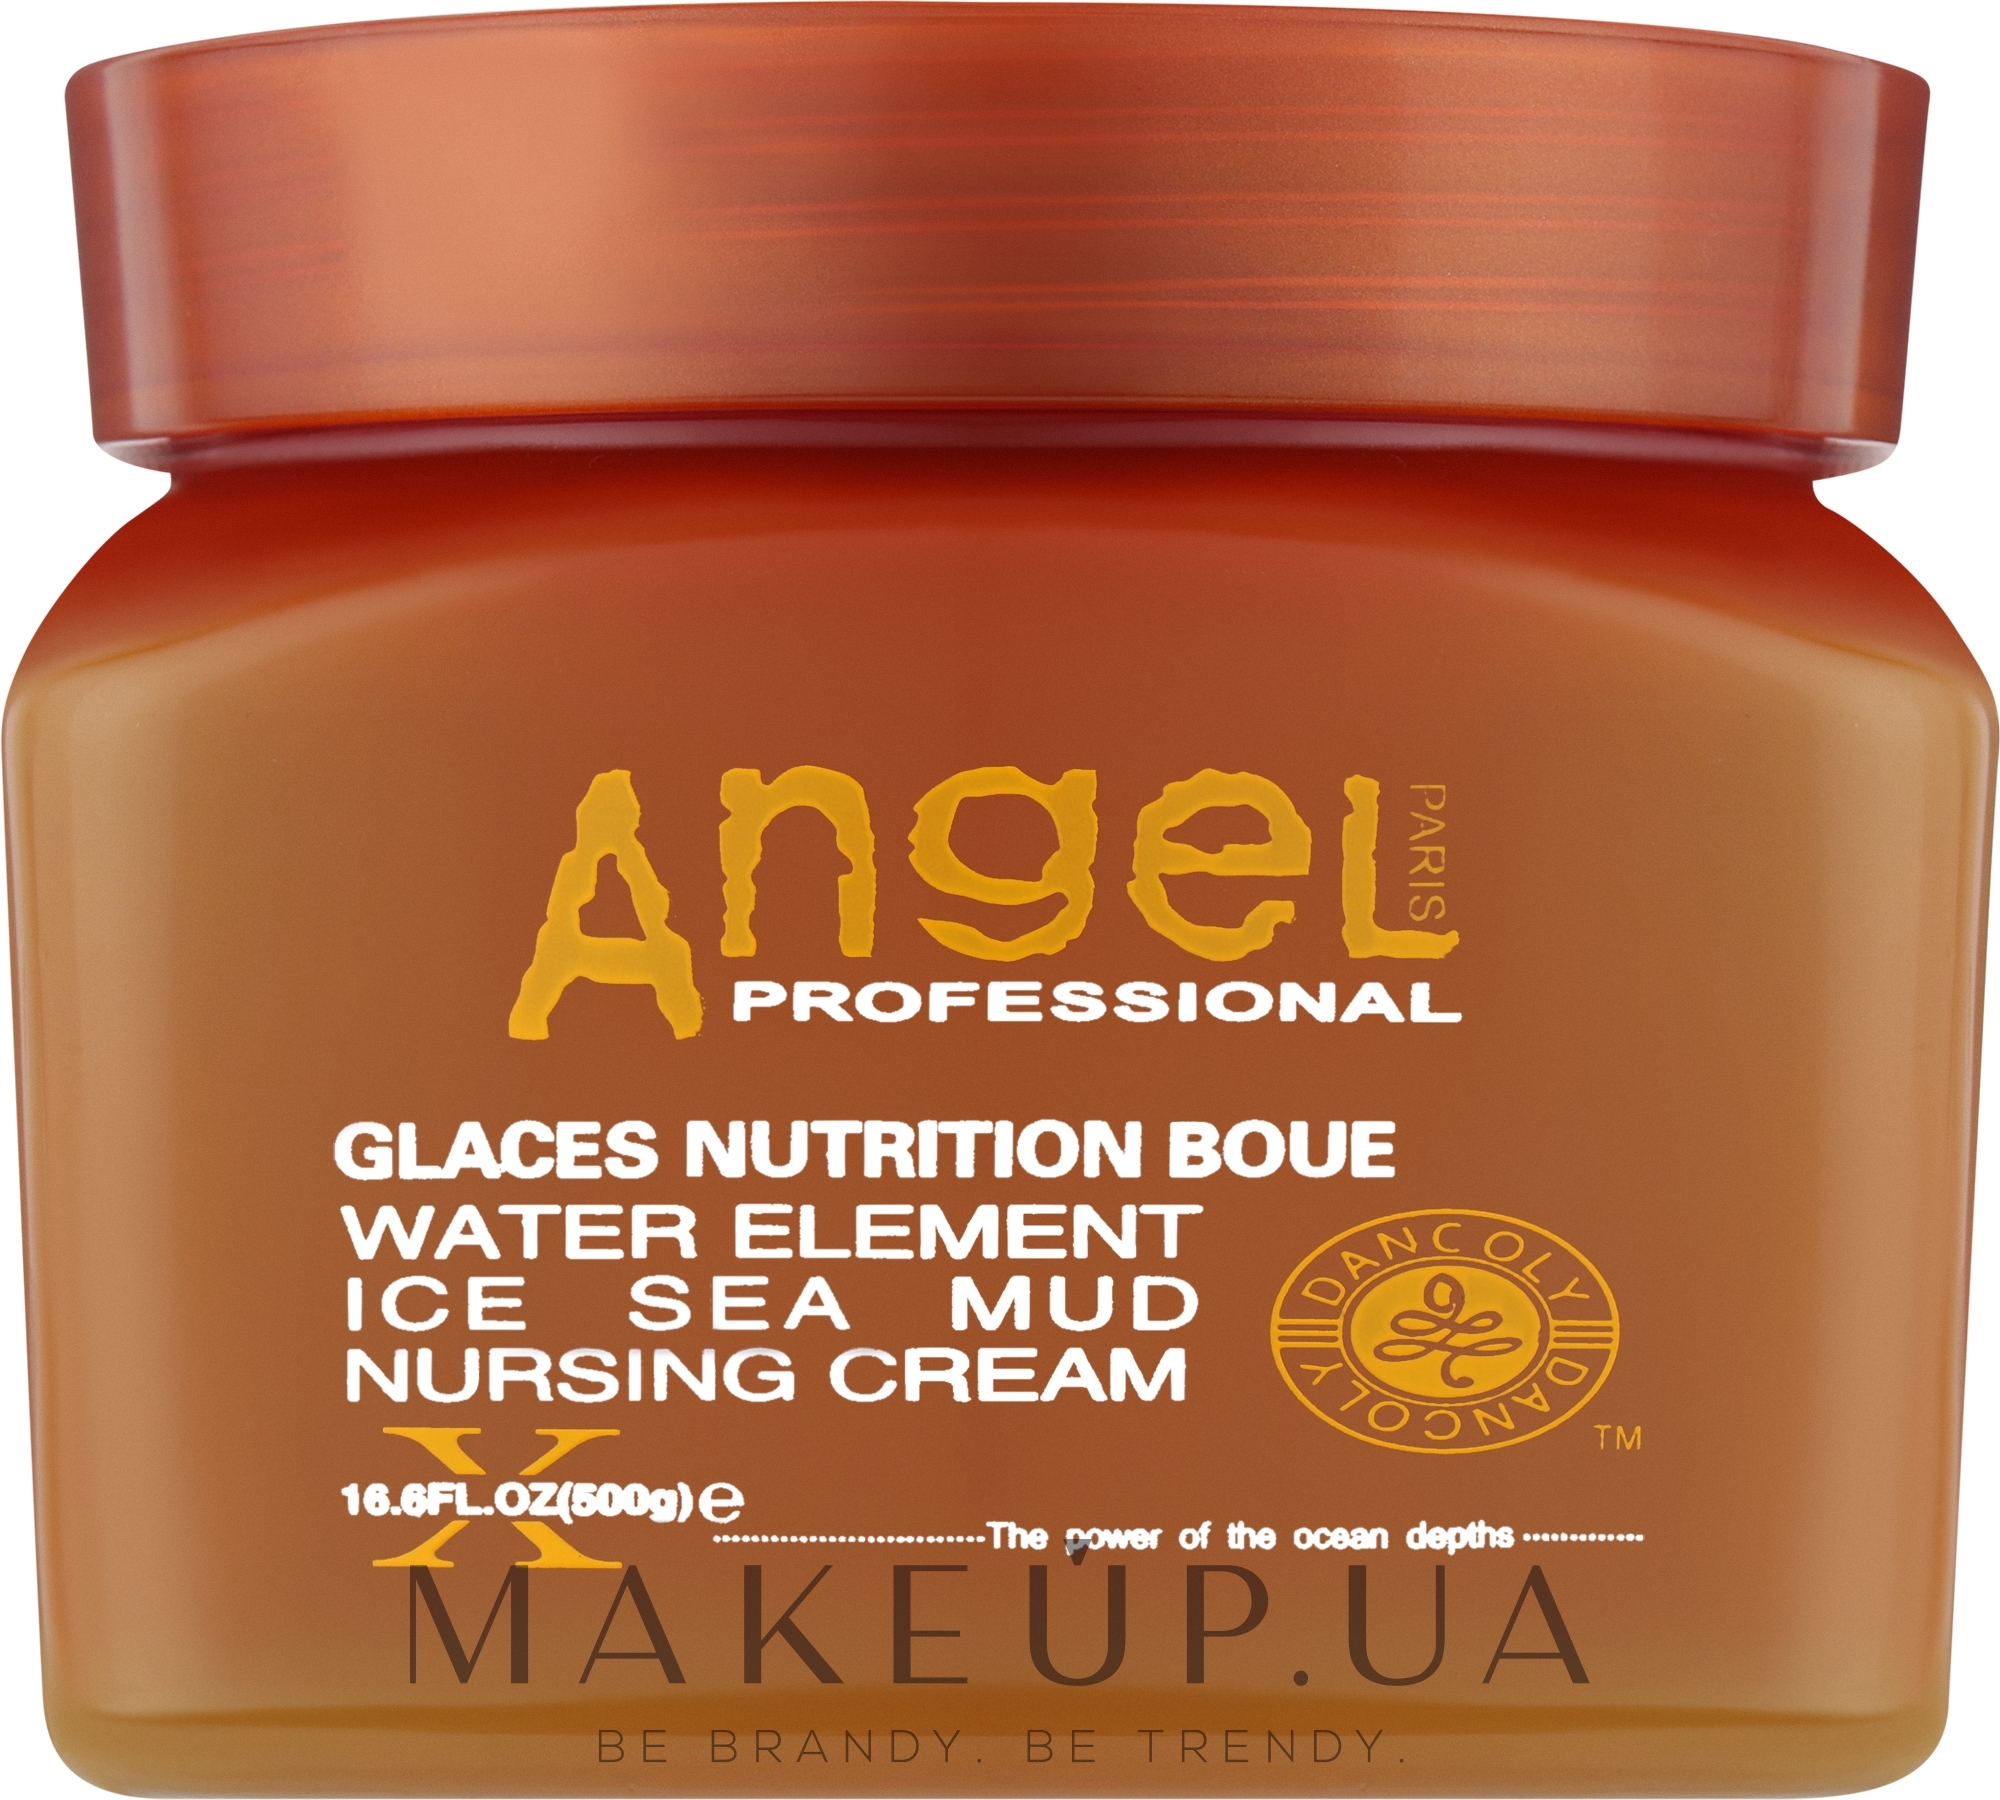 Живильний крем для волосся із замороженою морською гряззю - Angel Professional Paris Water Element Ice Sea Mud Nursing Cream — фото 500g